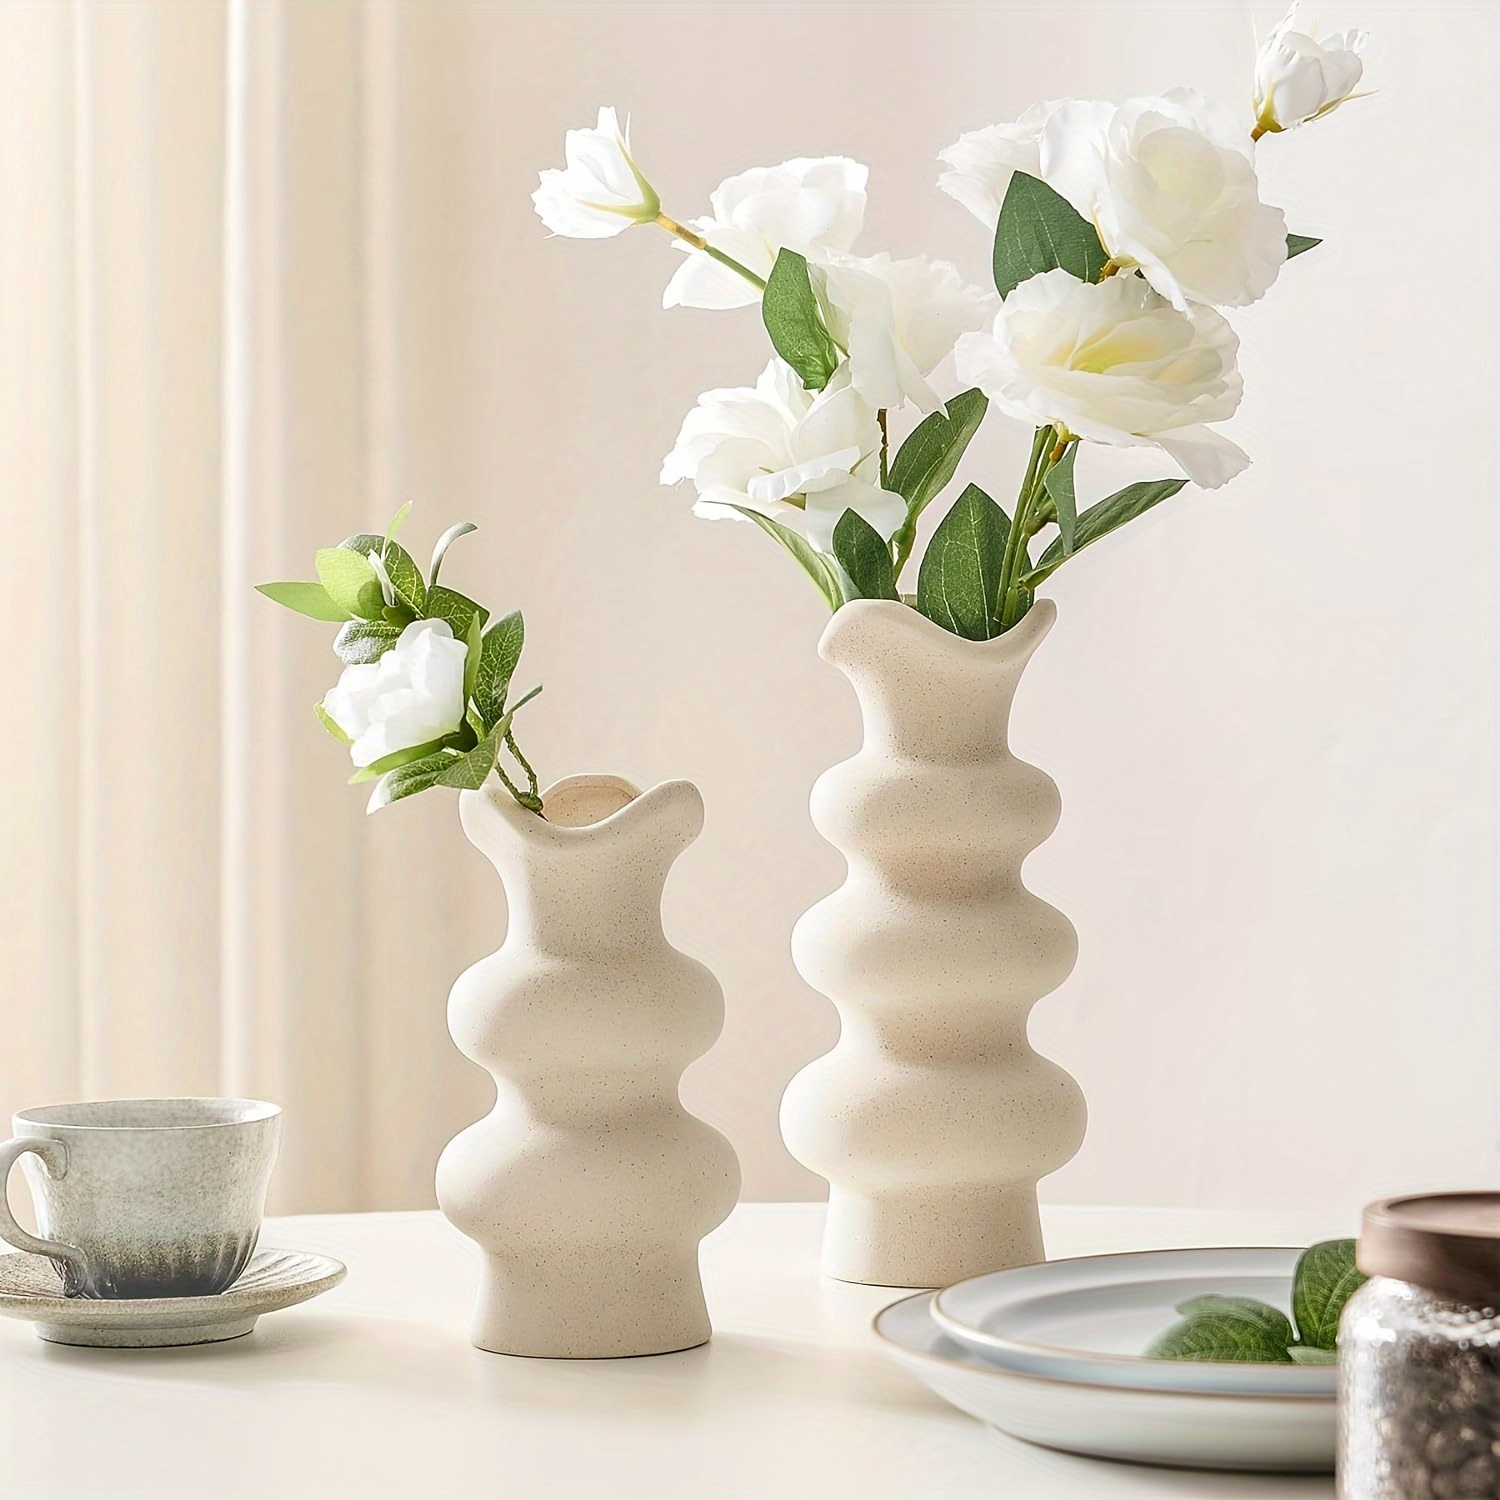 

Modern Decorative White Ceramic Vases For Home Decor 8.3 Inch, Abstract Minimalist Vase For Pampas Grass, Boho Flower Vase, Aesthetic Cream Vase